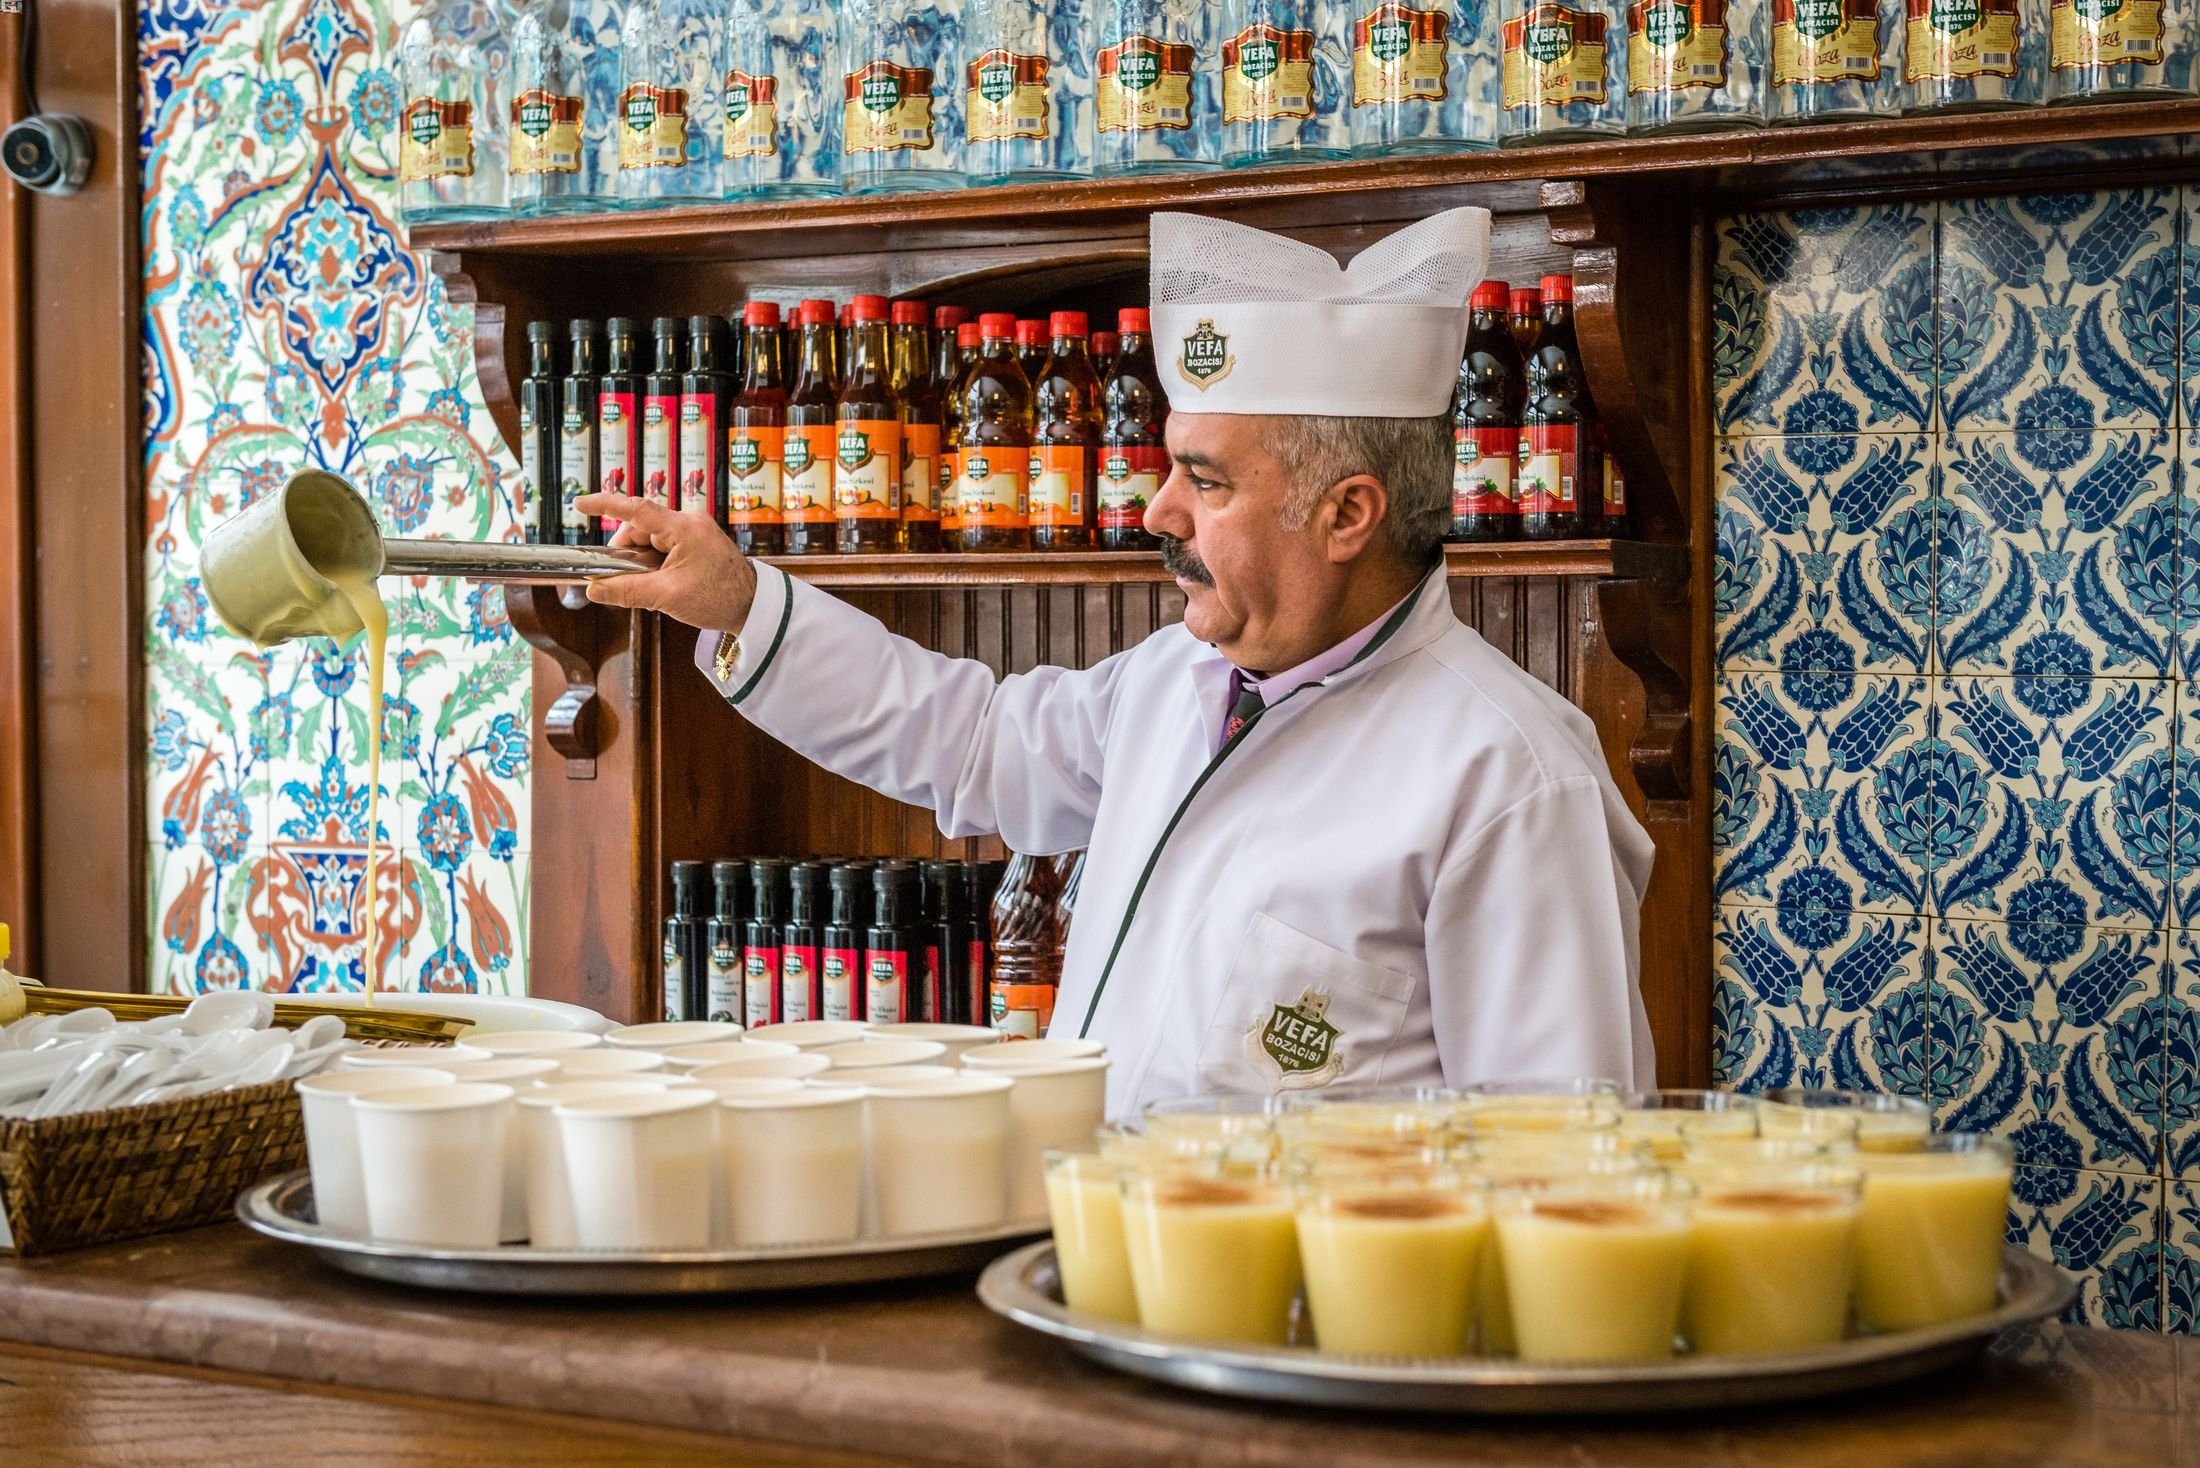 Boza adalah minuman fermentasi populer yang dijual di Istanbul, Türkiye.  (Foto Shutterstock)